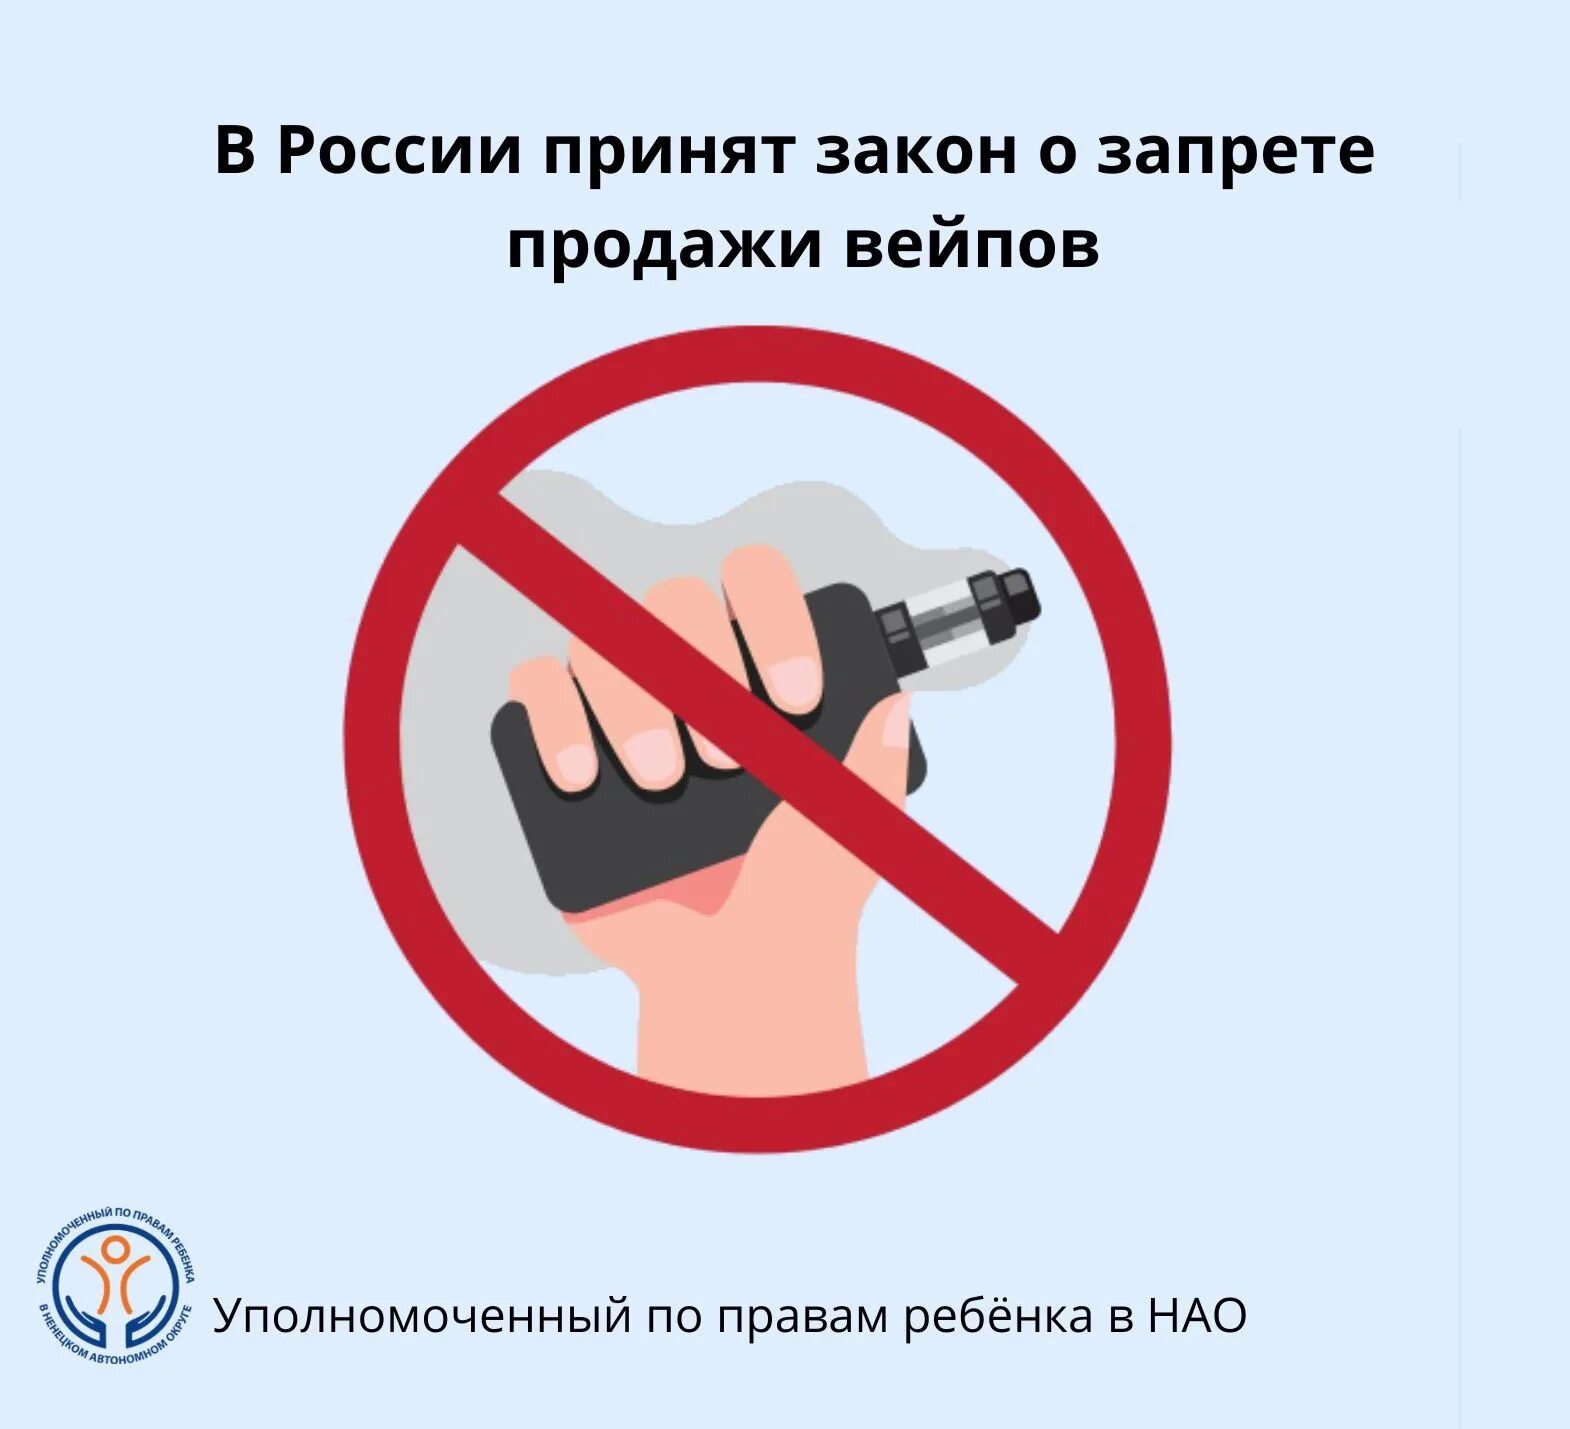 Запрет вейпов. Электронные сигареты запрещены. Курение электронных сигарет запрещено. Закон о запрете вейпов.